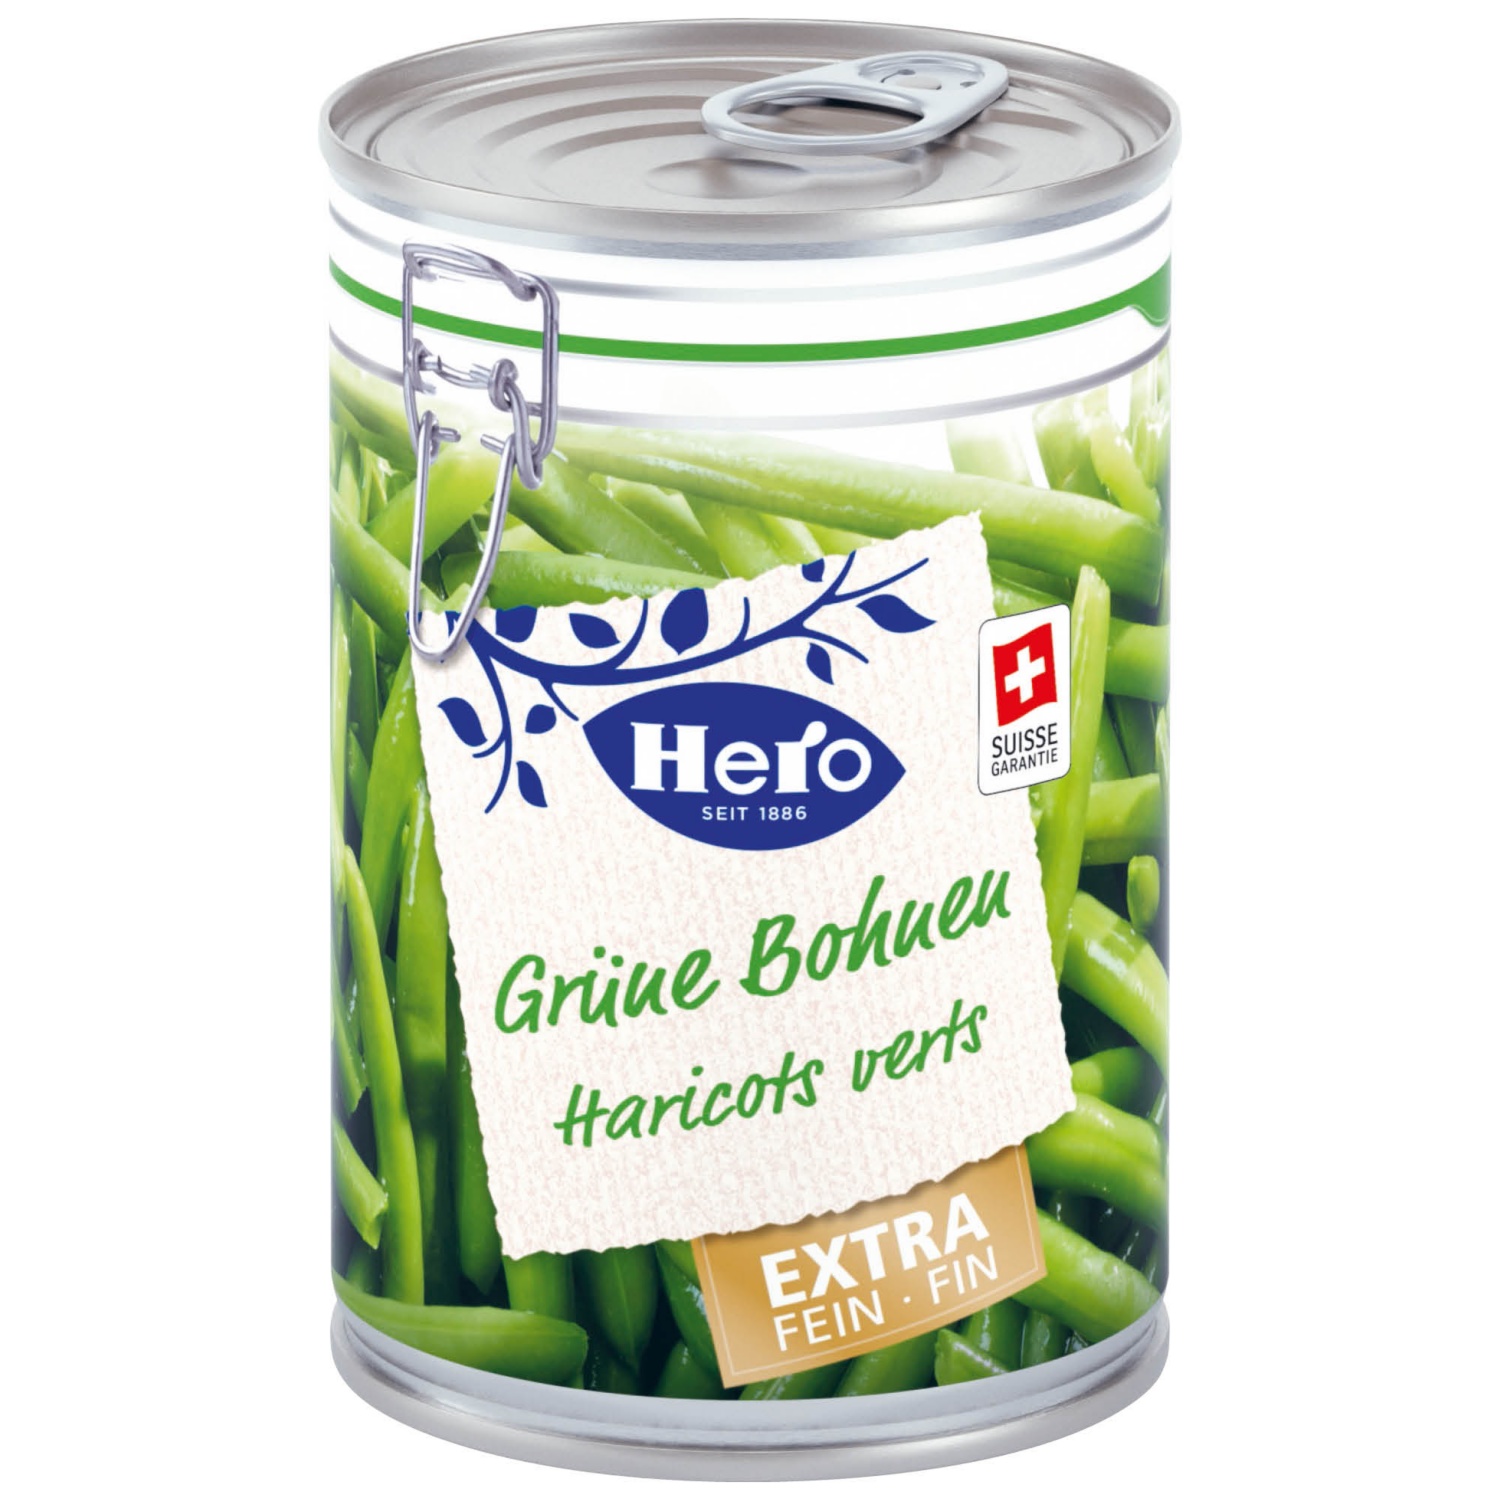 HERO Grüne Bohnen, extra fein